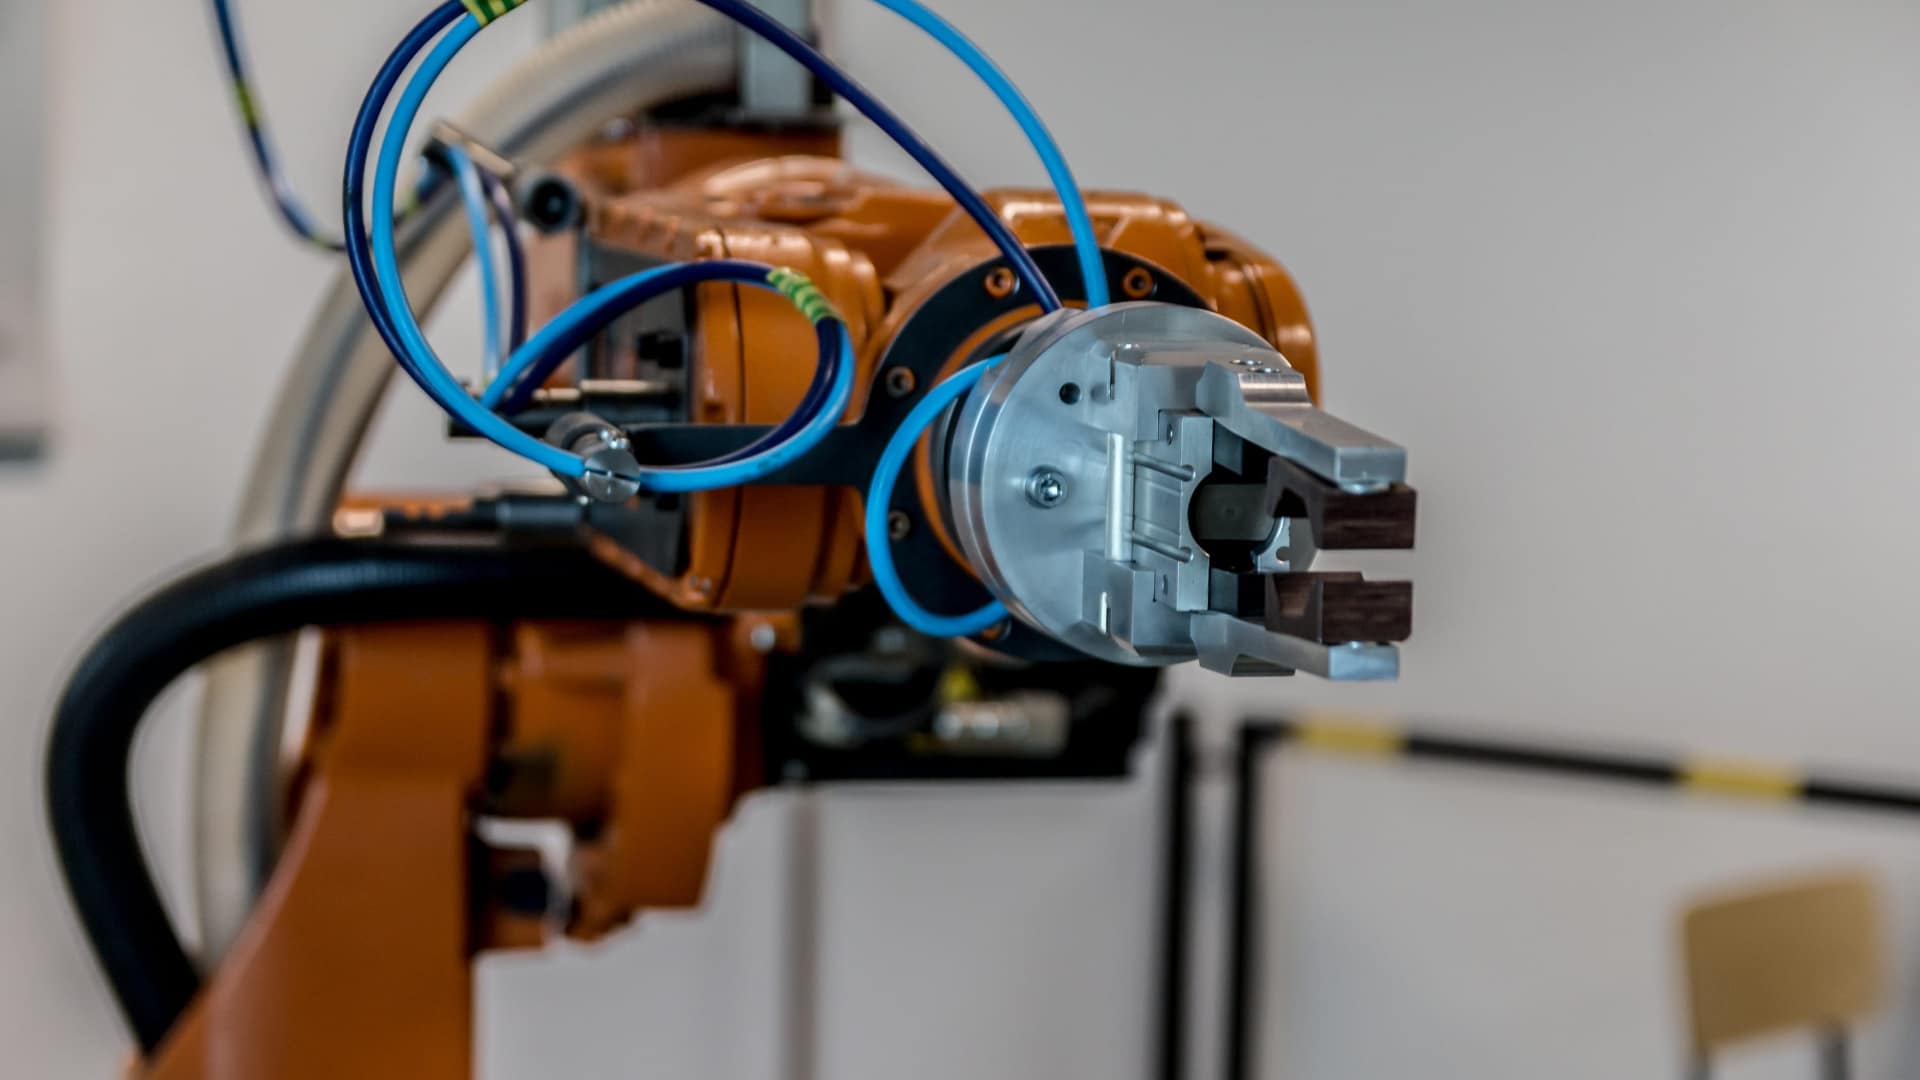 Robotica nella produzione flessibile, da Horizon 2020 una call per assegnare 248 mila euro a 15 progetti europei